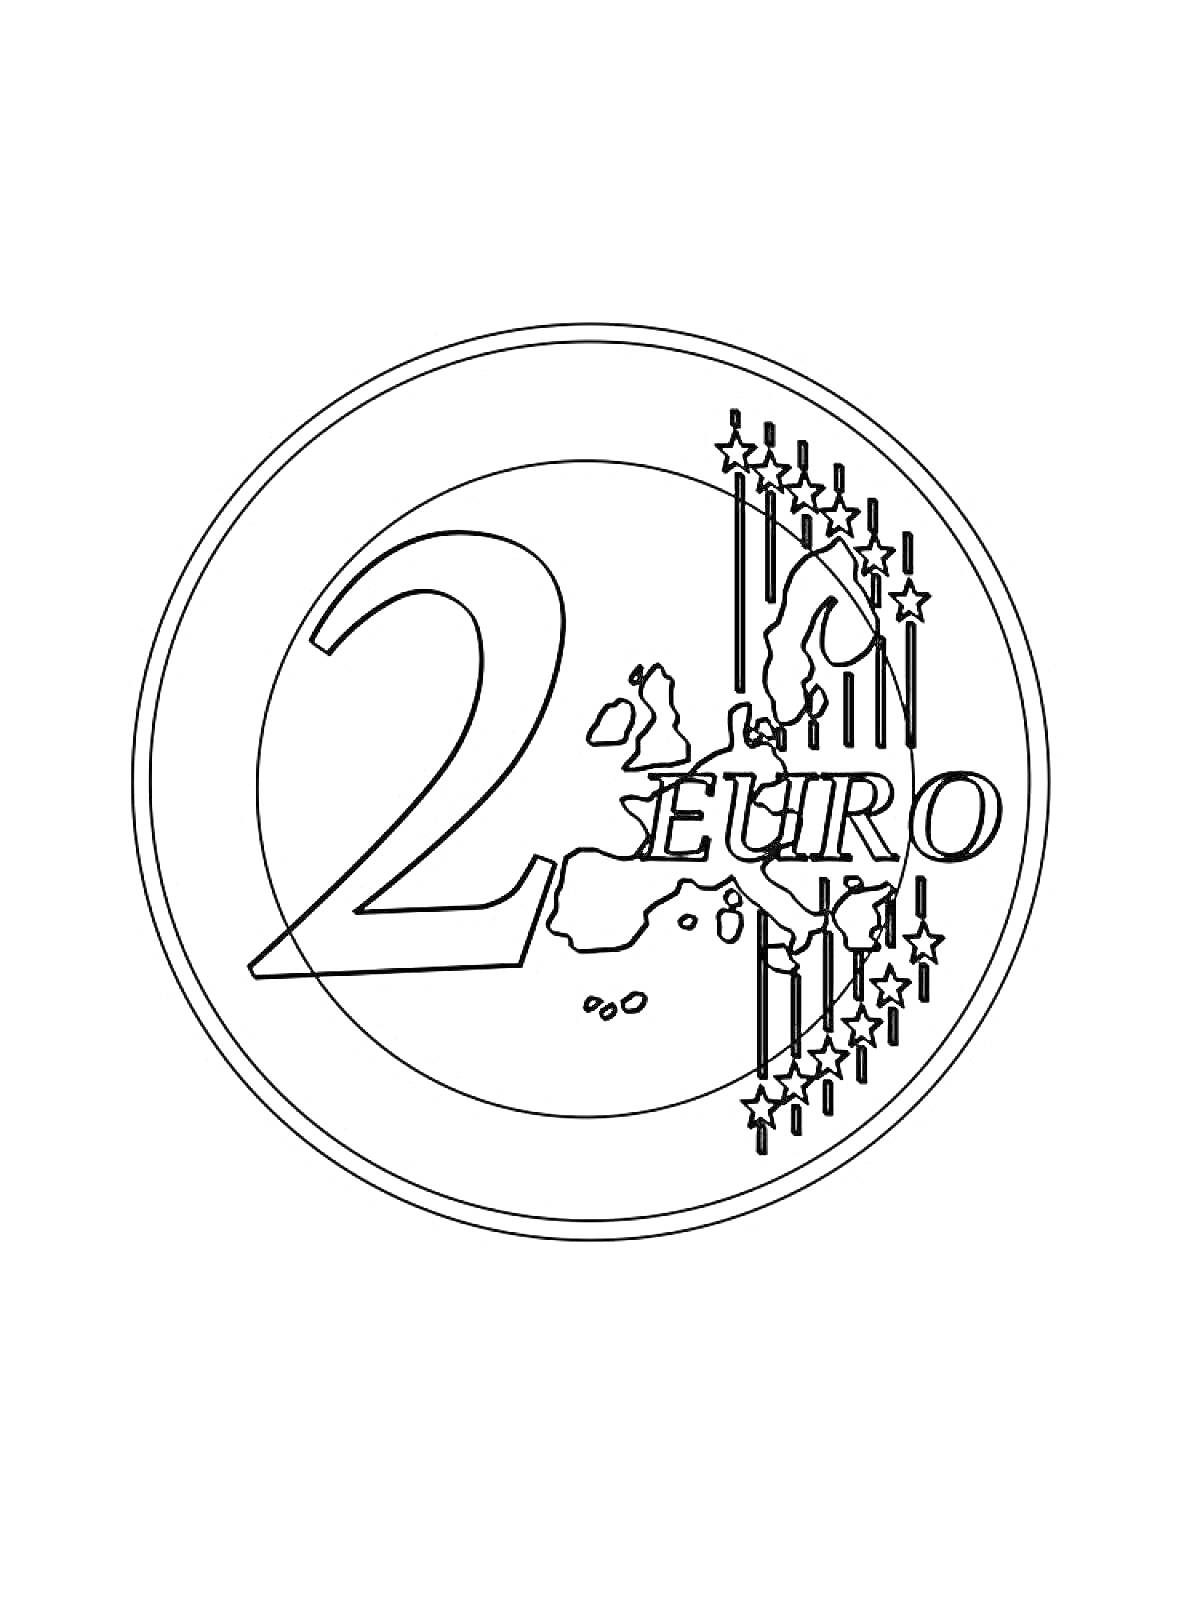 Раскраска монета номиналом 2 евро с изображением цифры 2, карты Европы и звезд